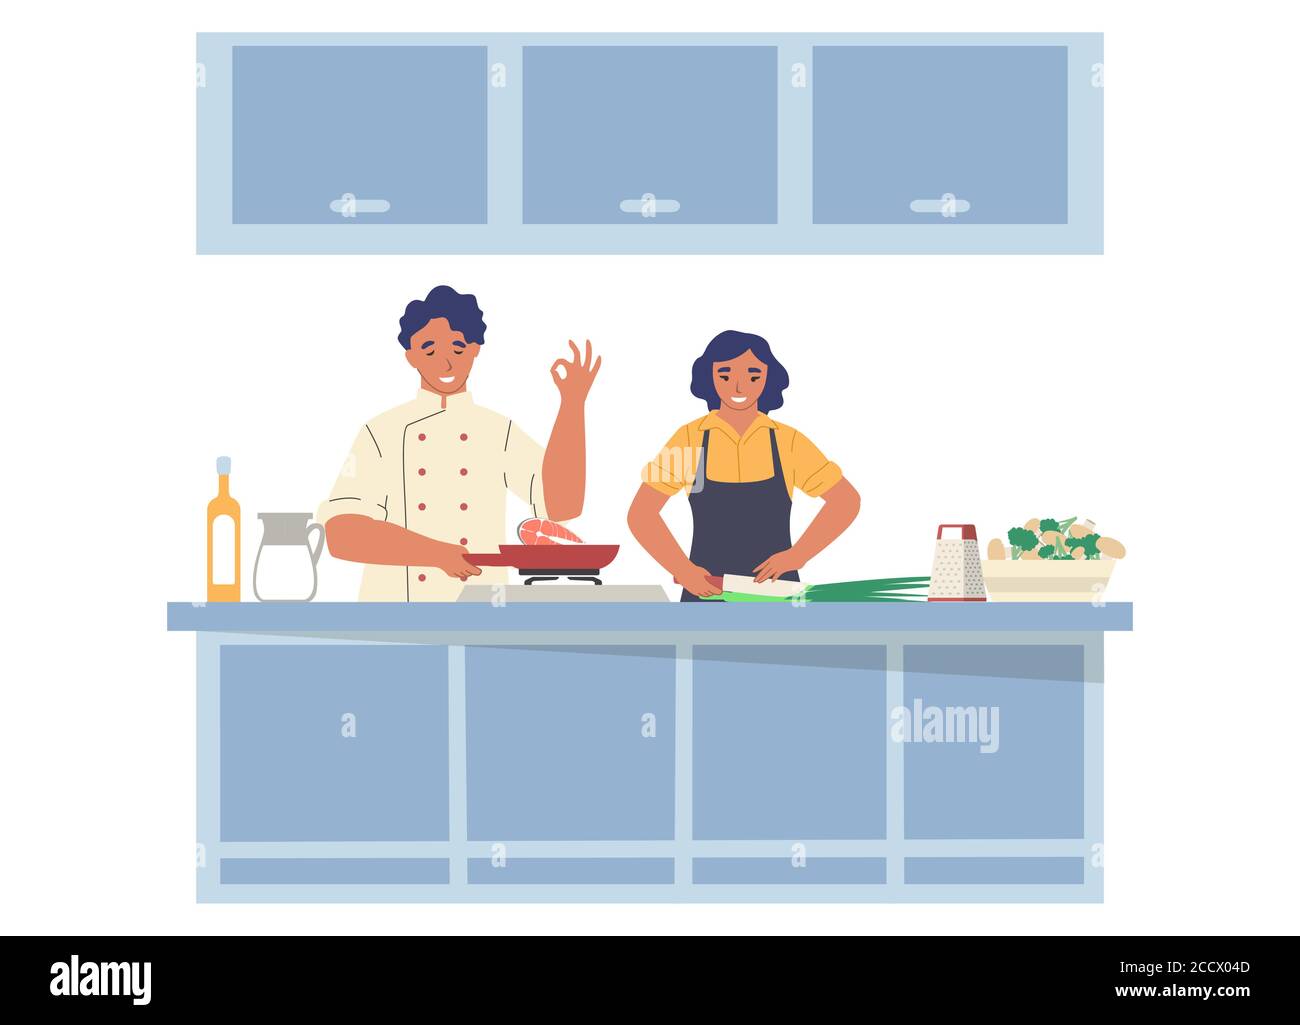 Kochen TV-Show. Mann und Frau bereiten Gericht in der Küche, flache Vektor-Illustration Stock Vektor